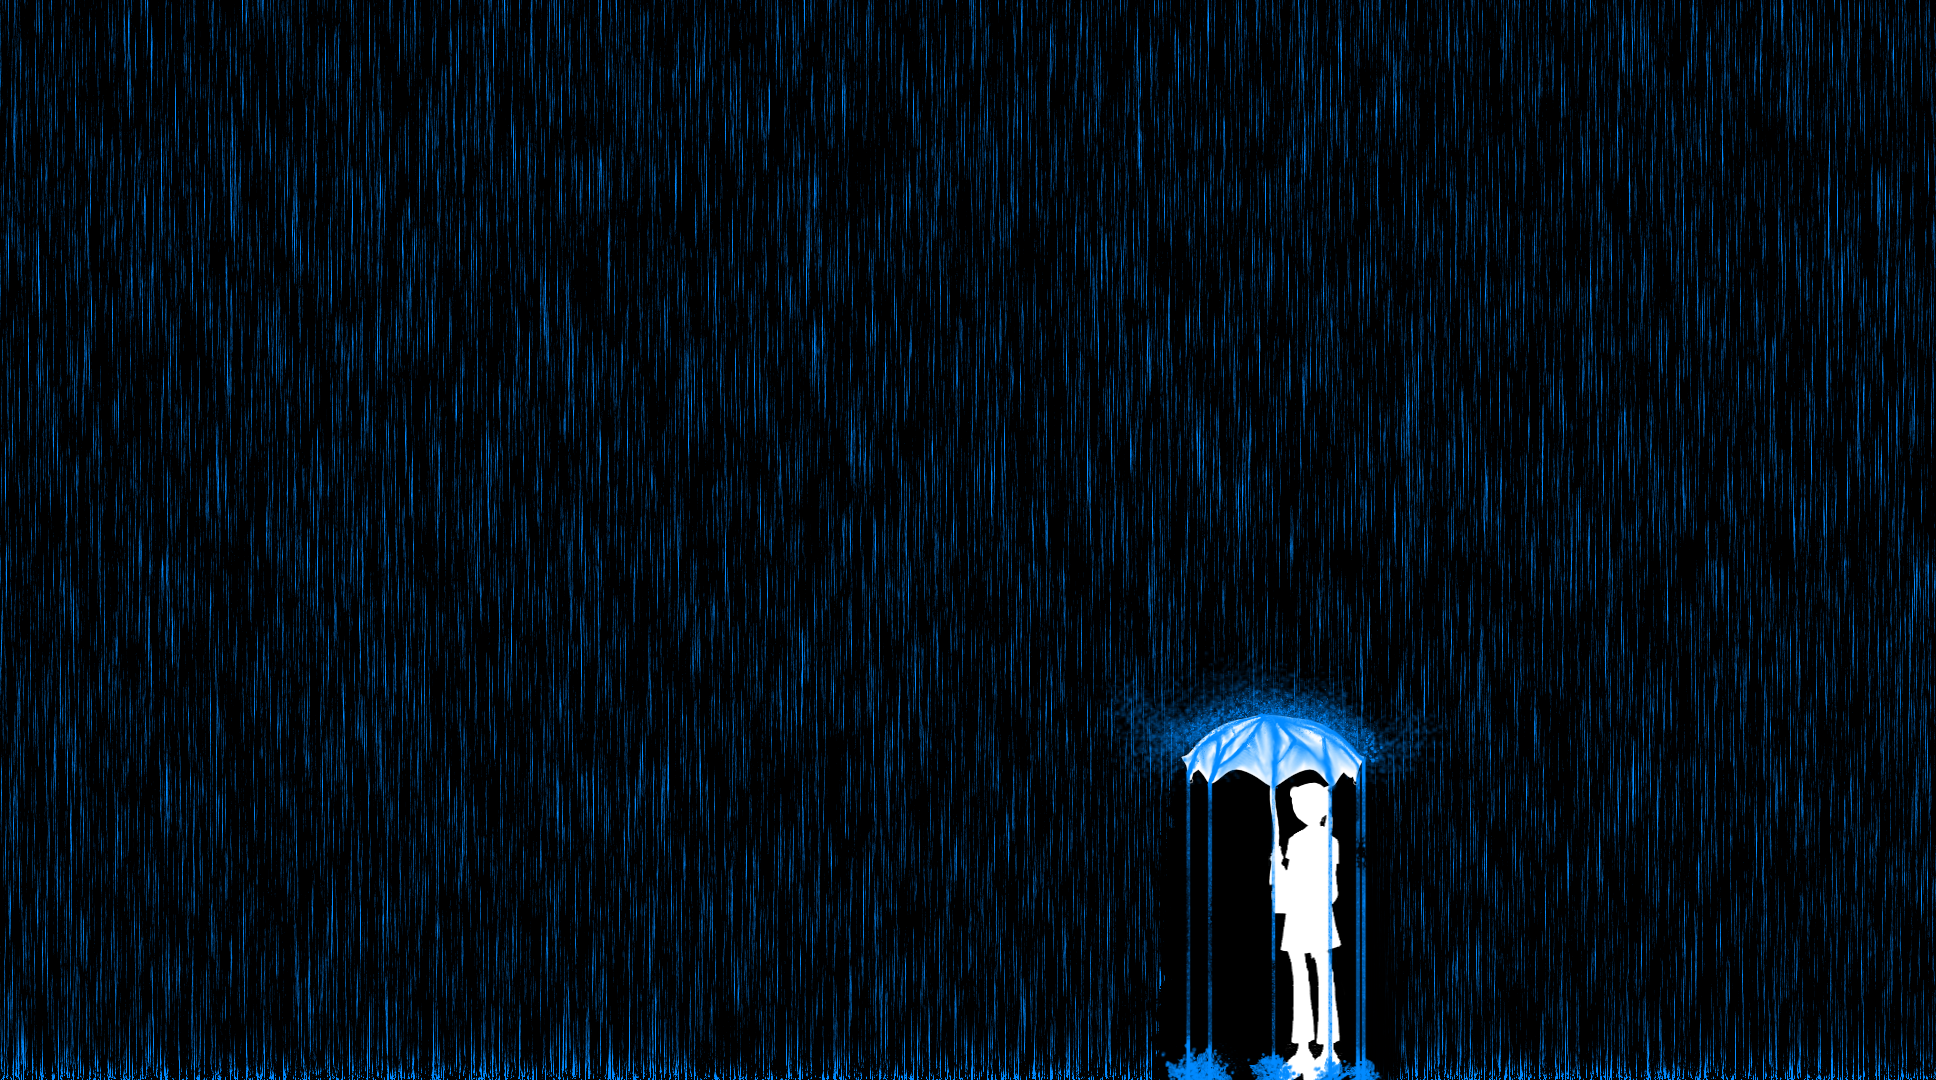 giornata di pioggia live wallpaper,blu,nero,leggero,blu elettrico,cielo